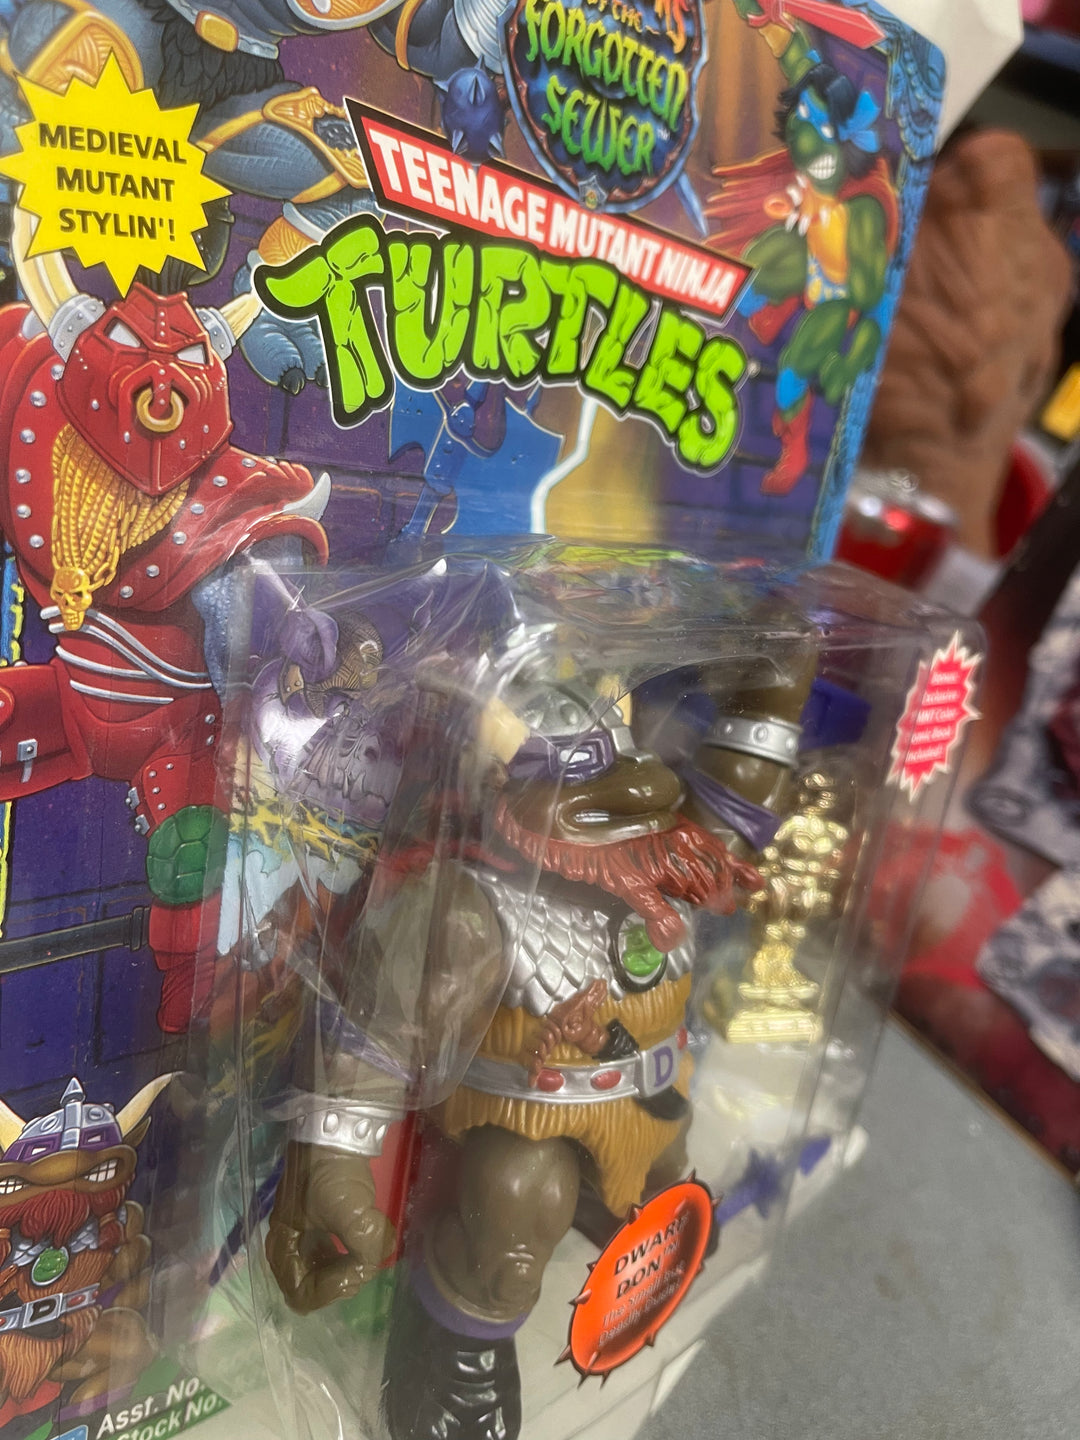 Teenage Mutant Ninja Turtles Stylin Box